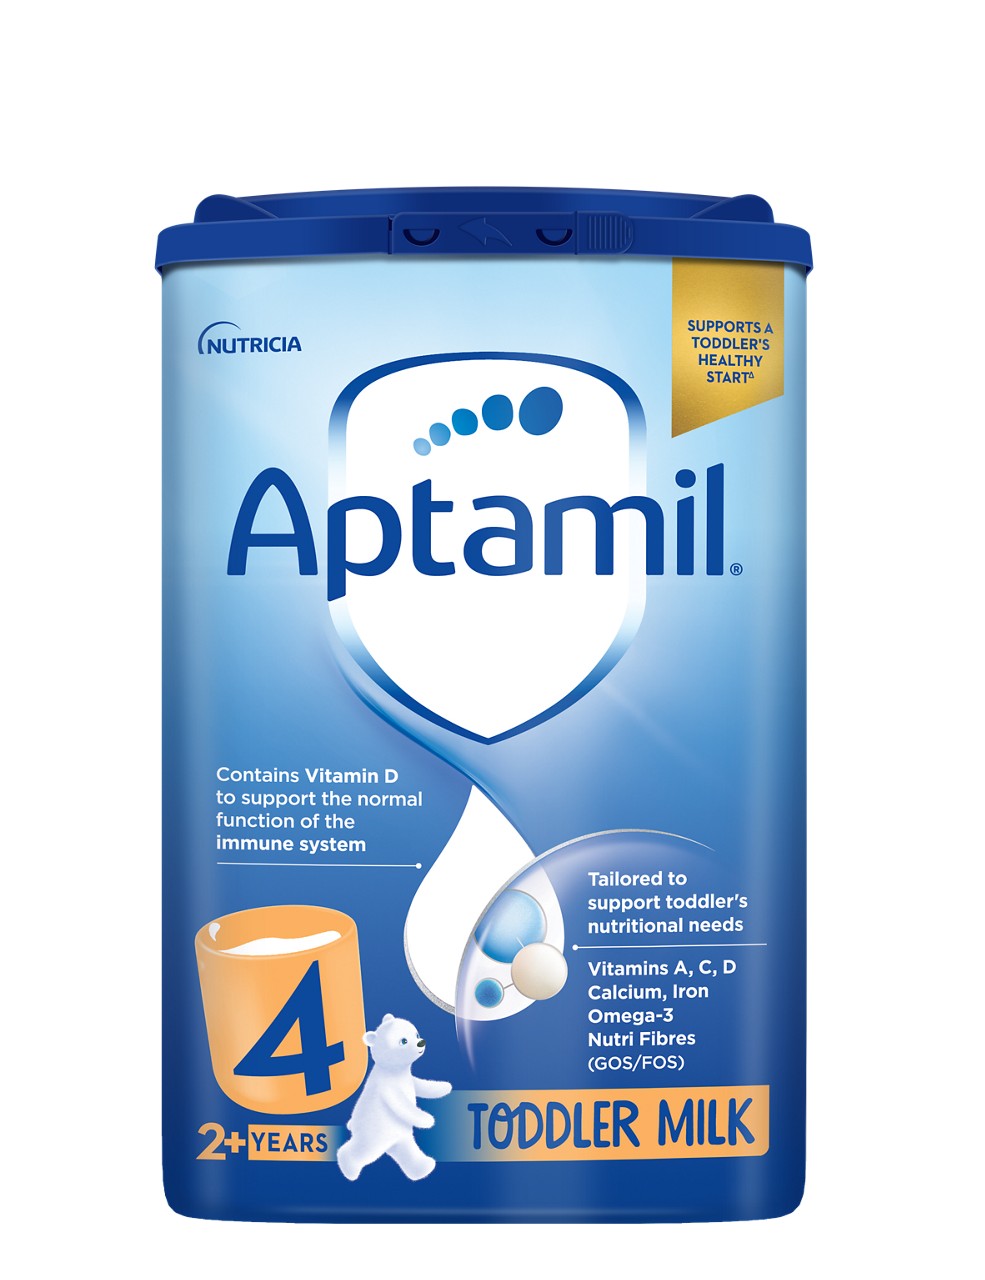 en-GB,Aptamil Toddler milk (2-3 years) (800g pack)